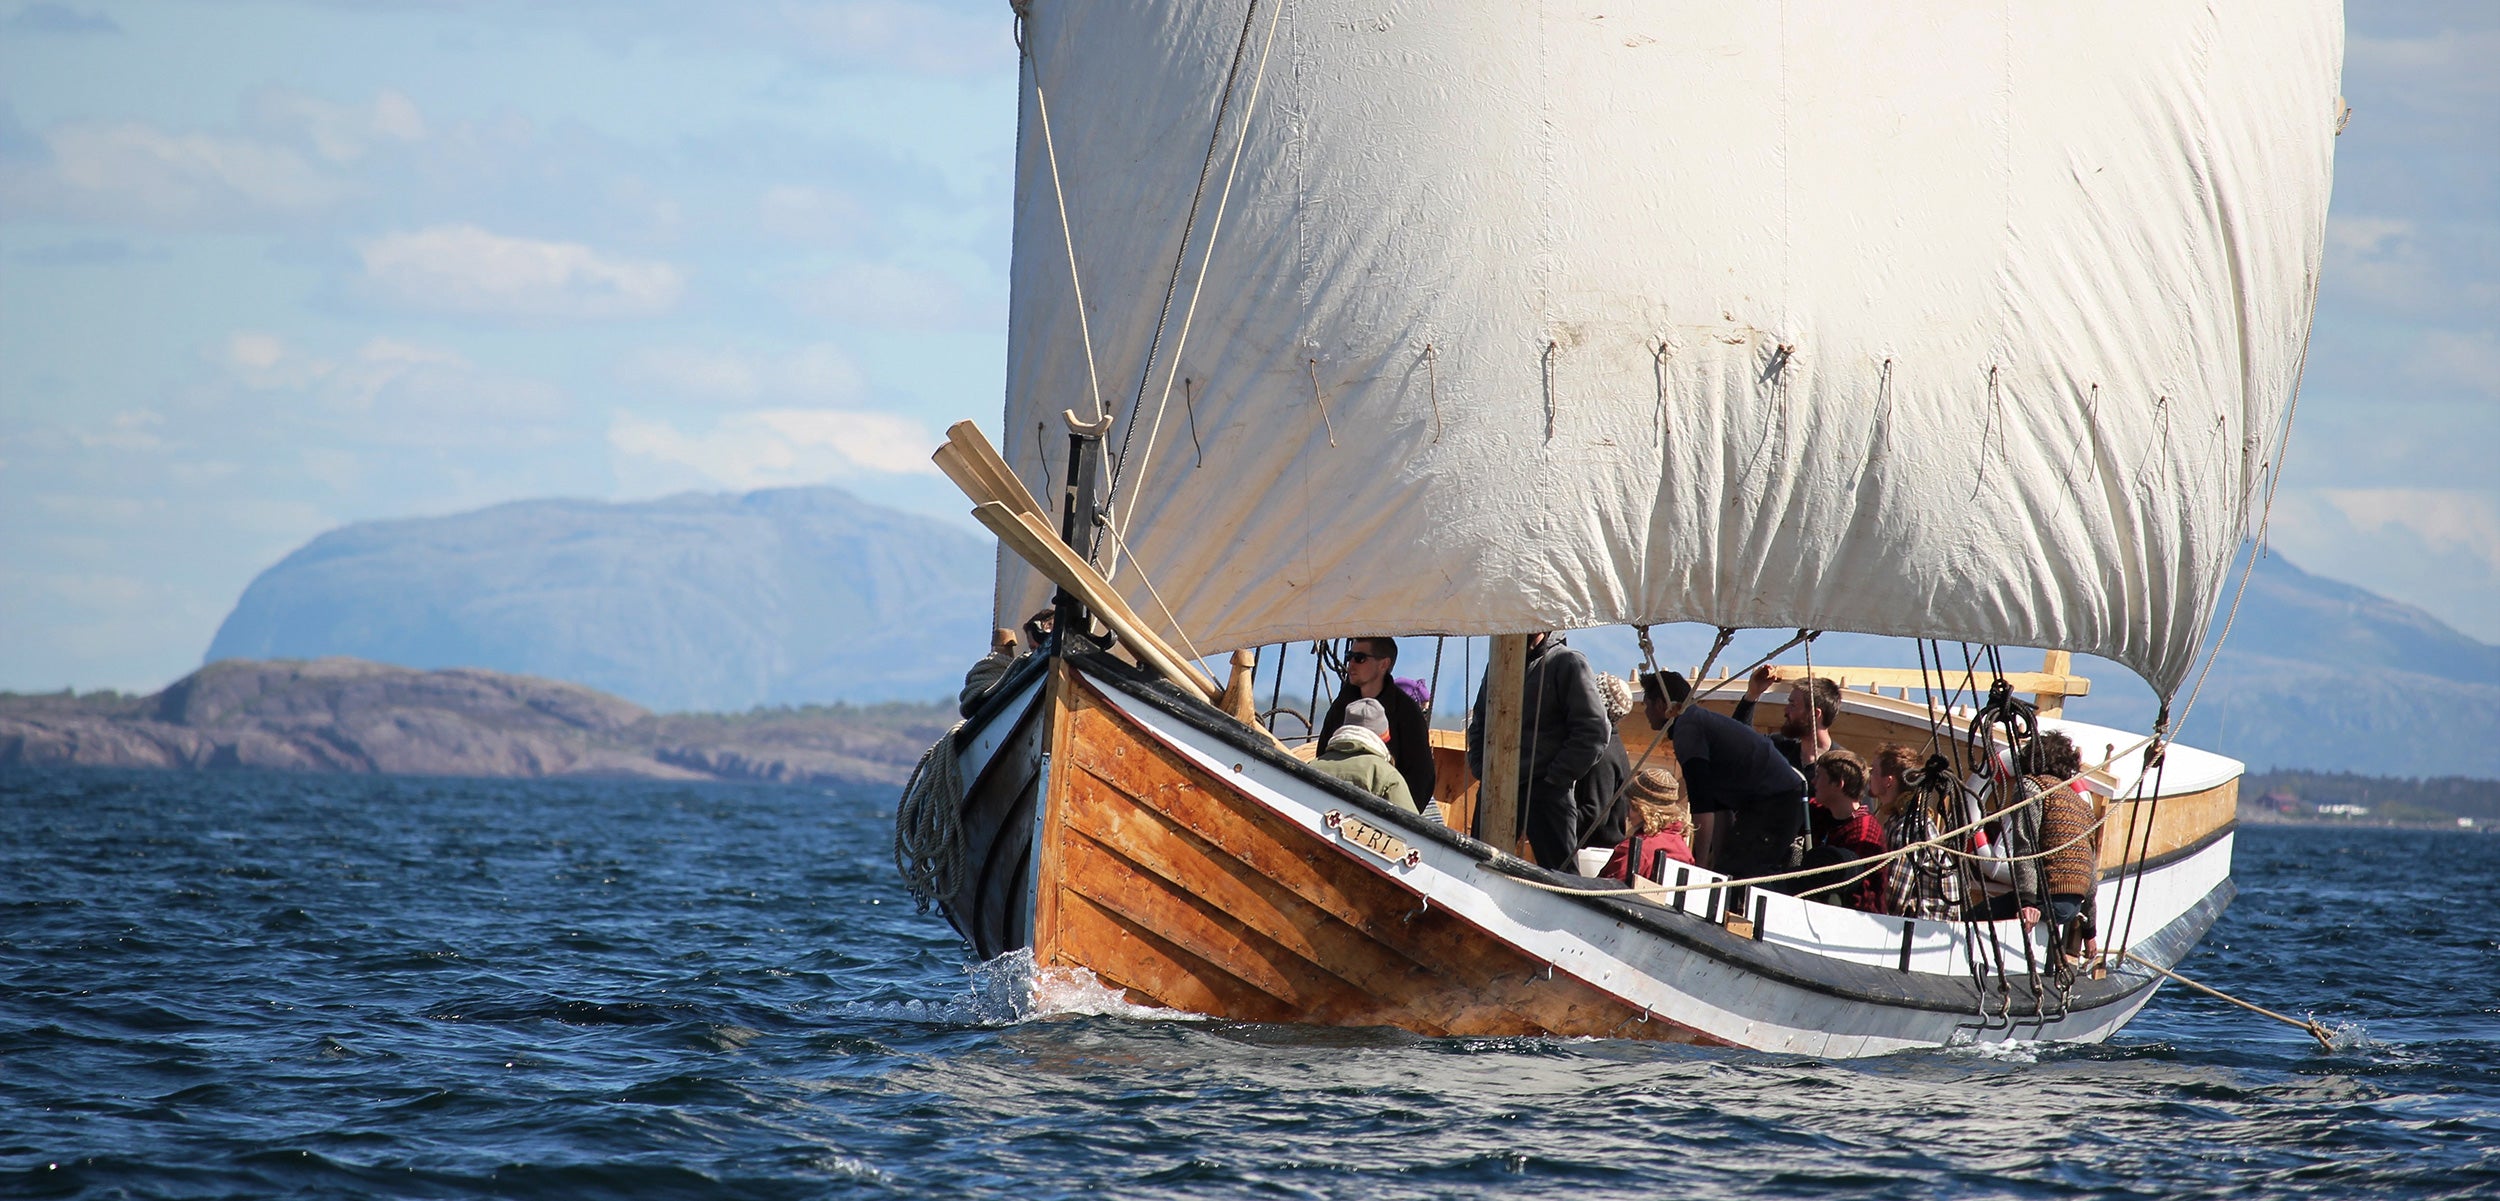 A modern viking ship cruising on water